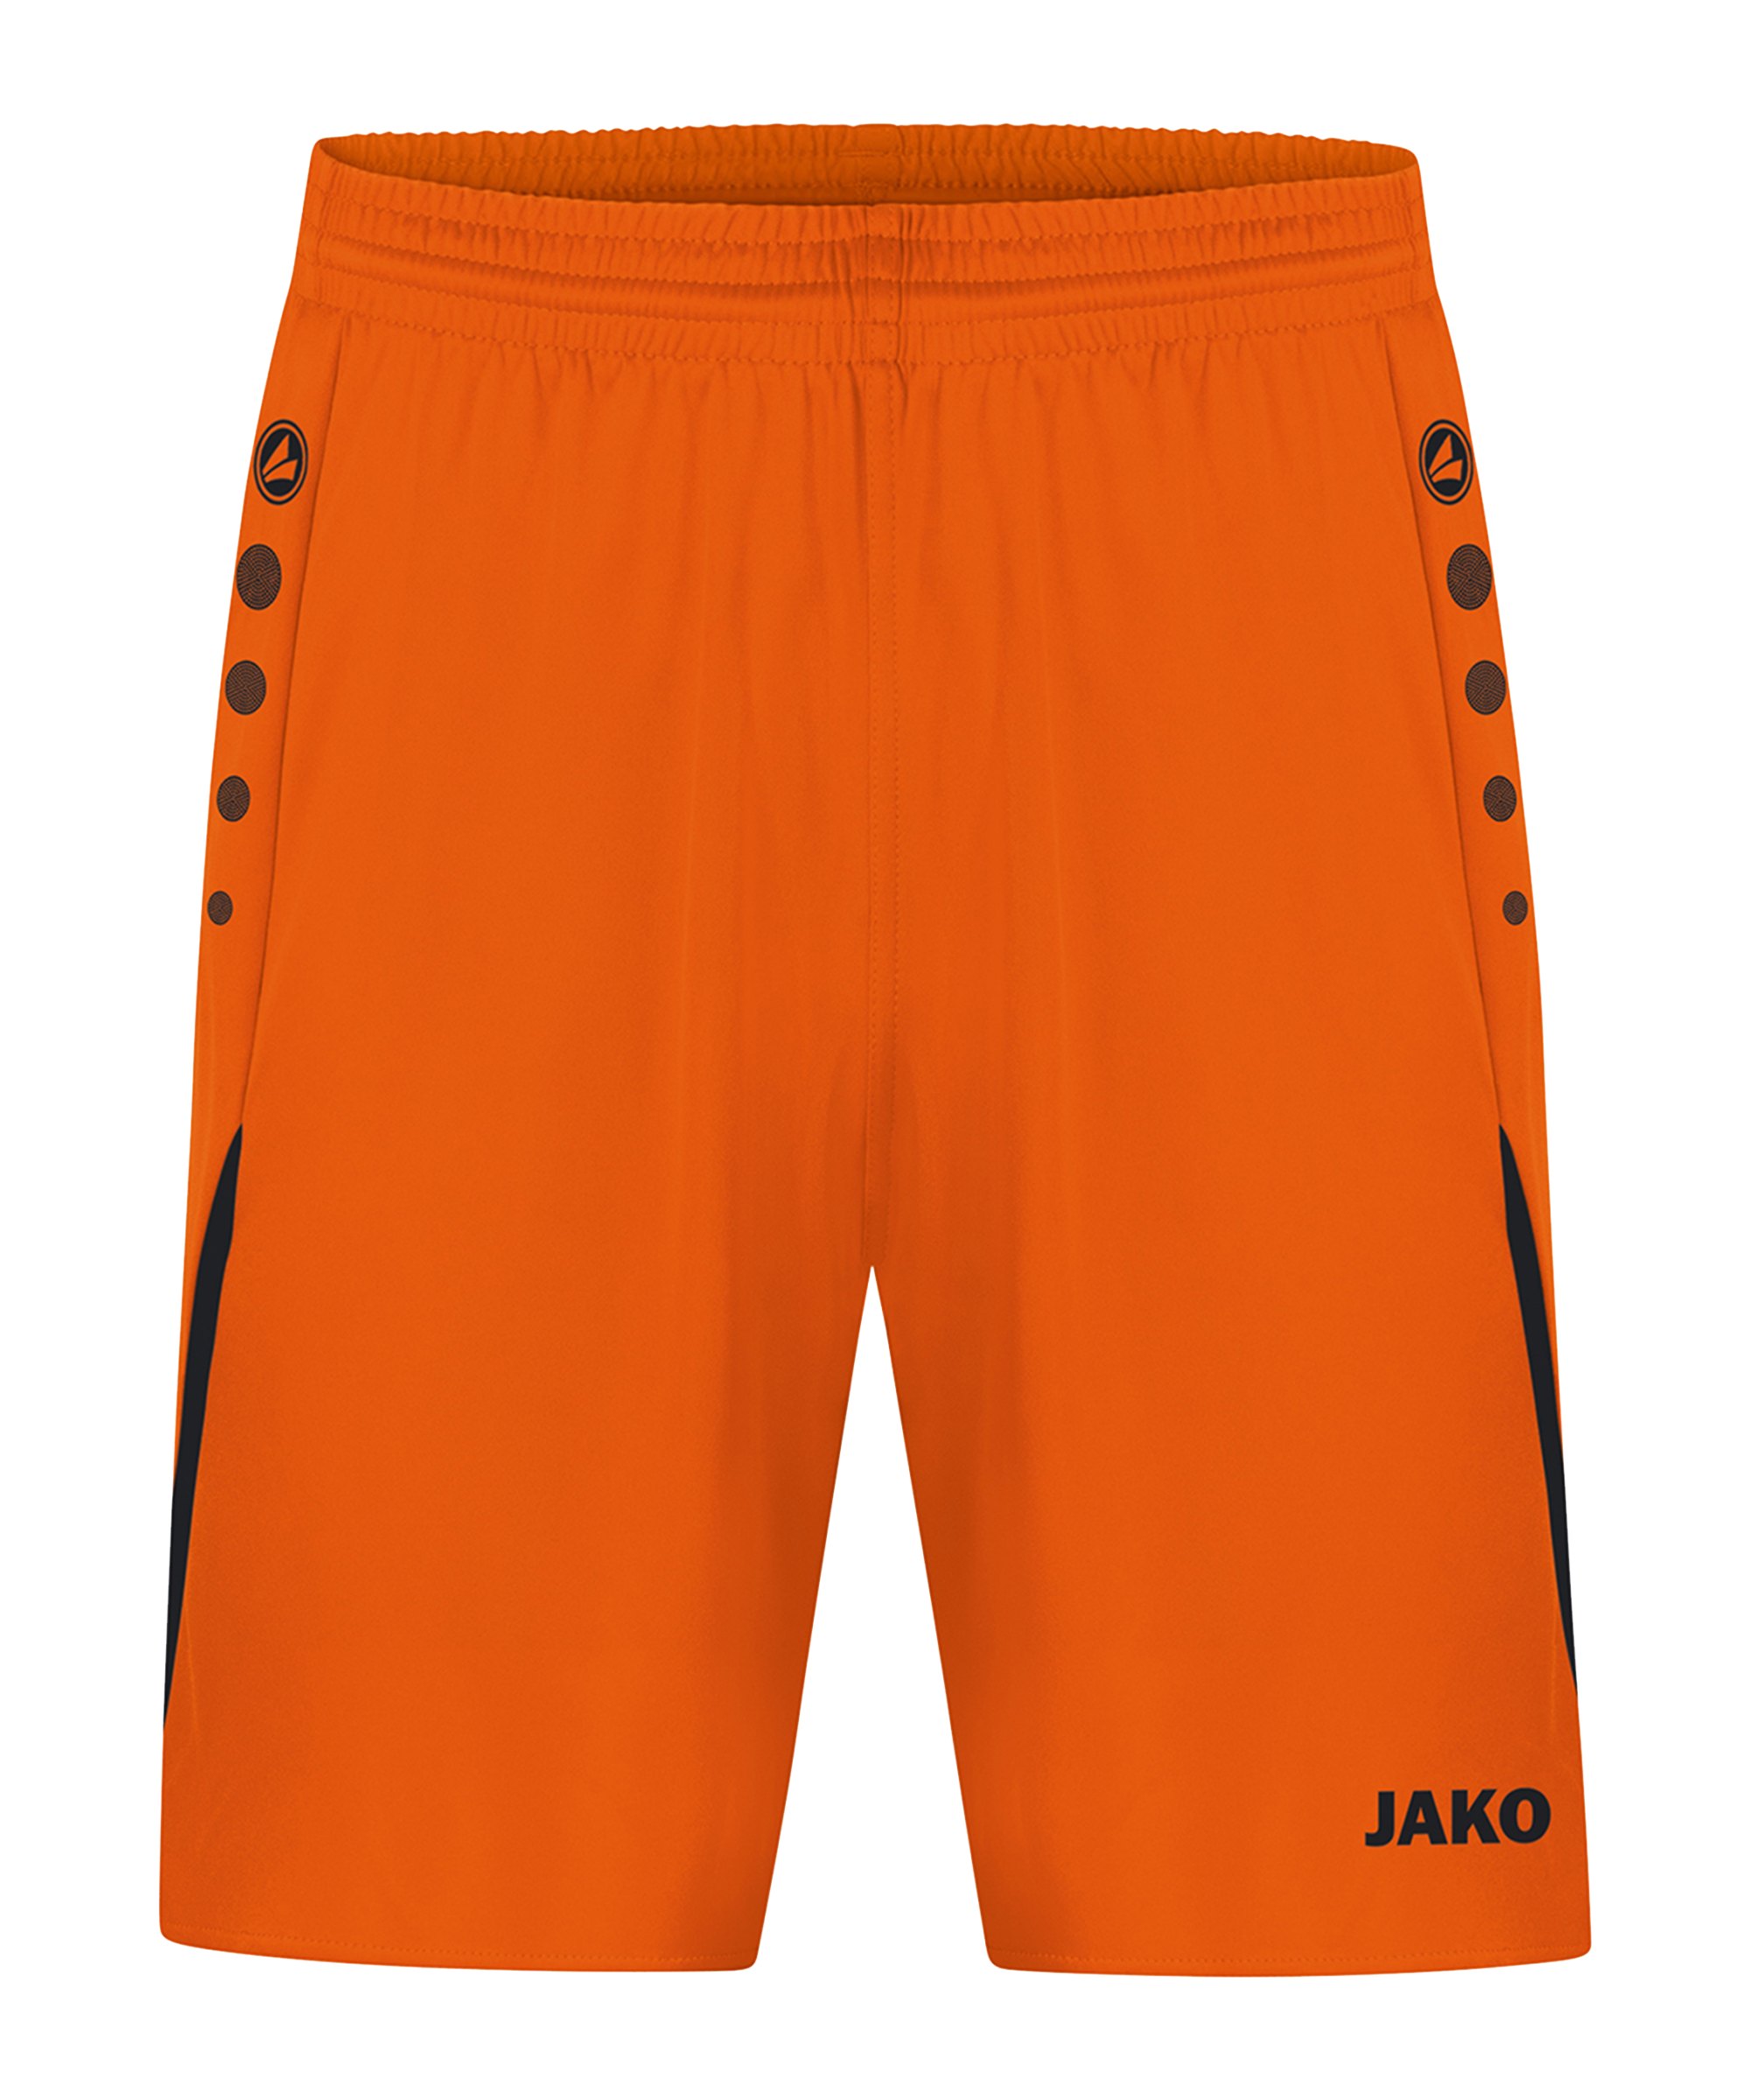 JAKO Challenge Short Damen Orange Schwarz F351 - orange